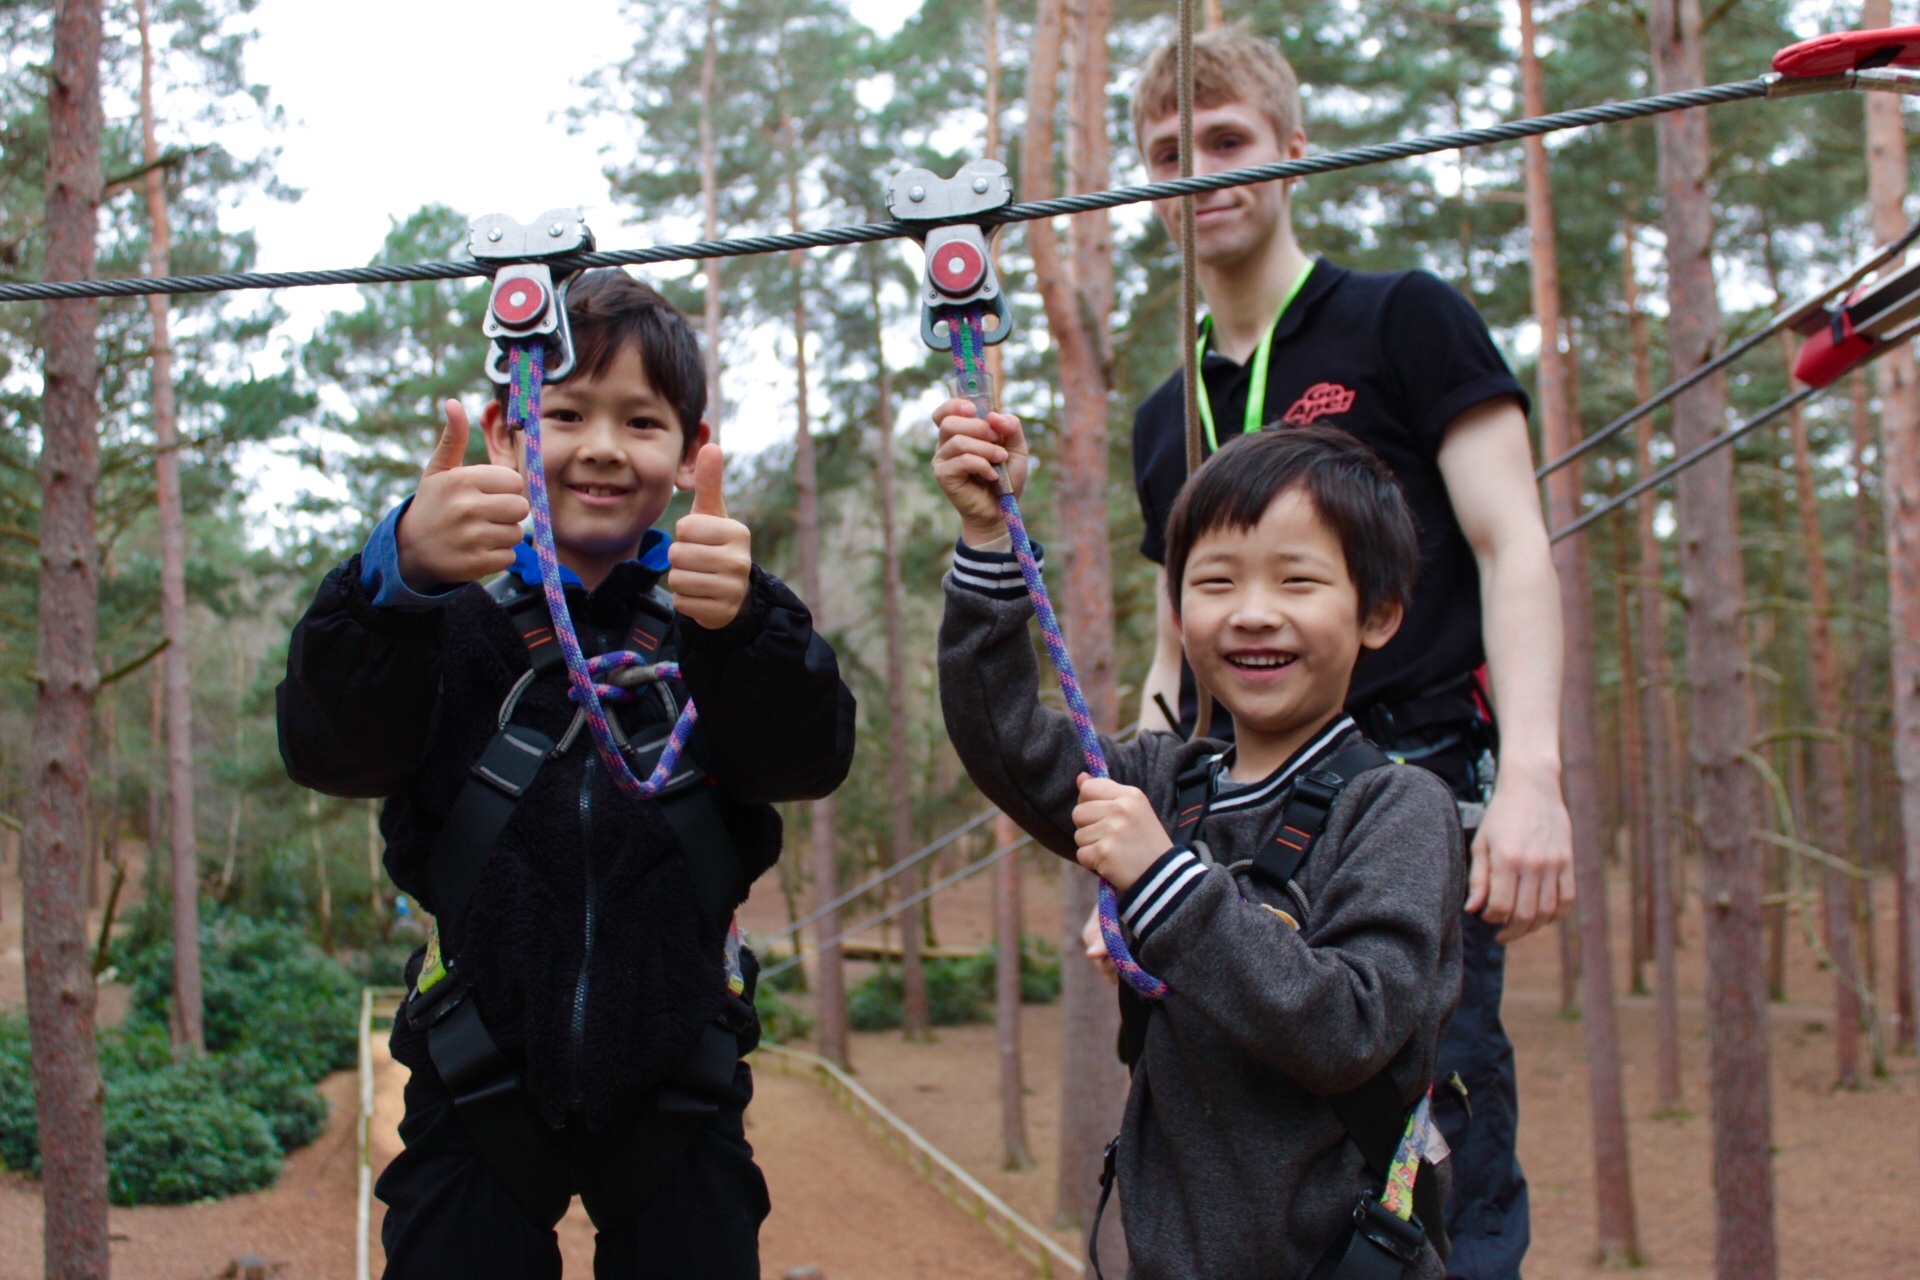 High Ropes For Kids In Bracknell Berkshire Go Ape